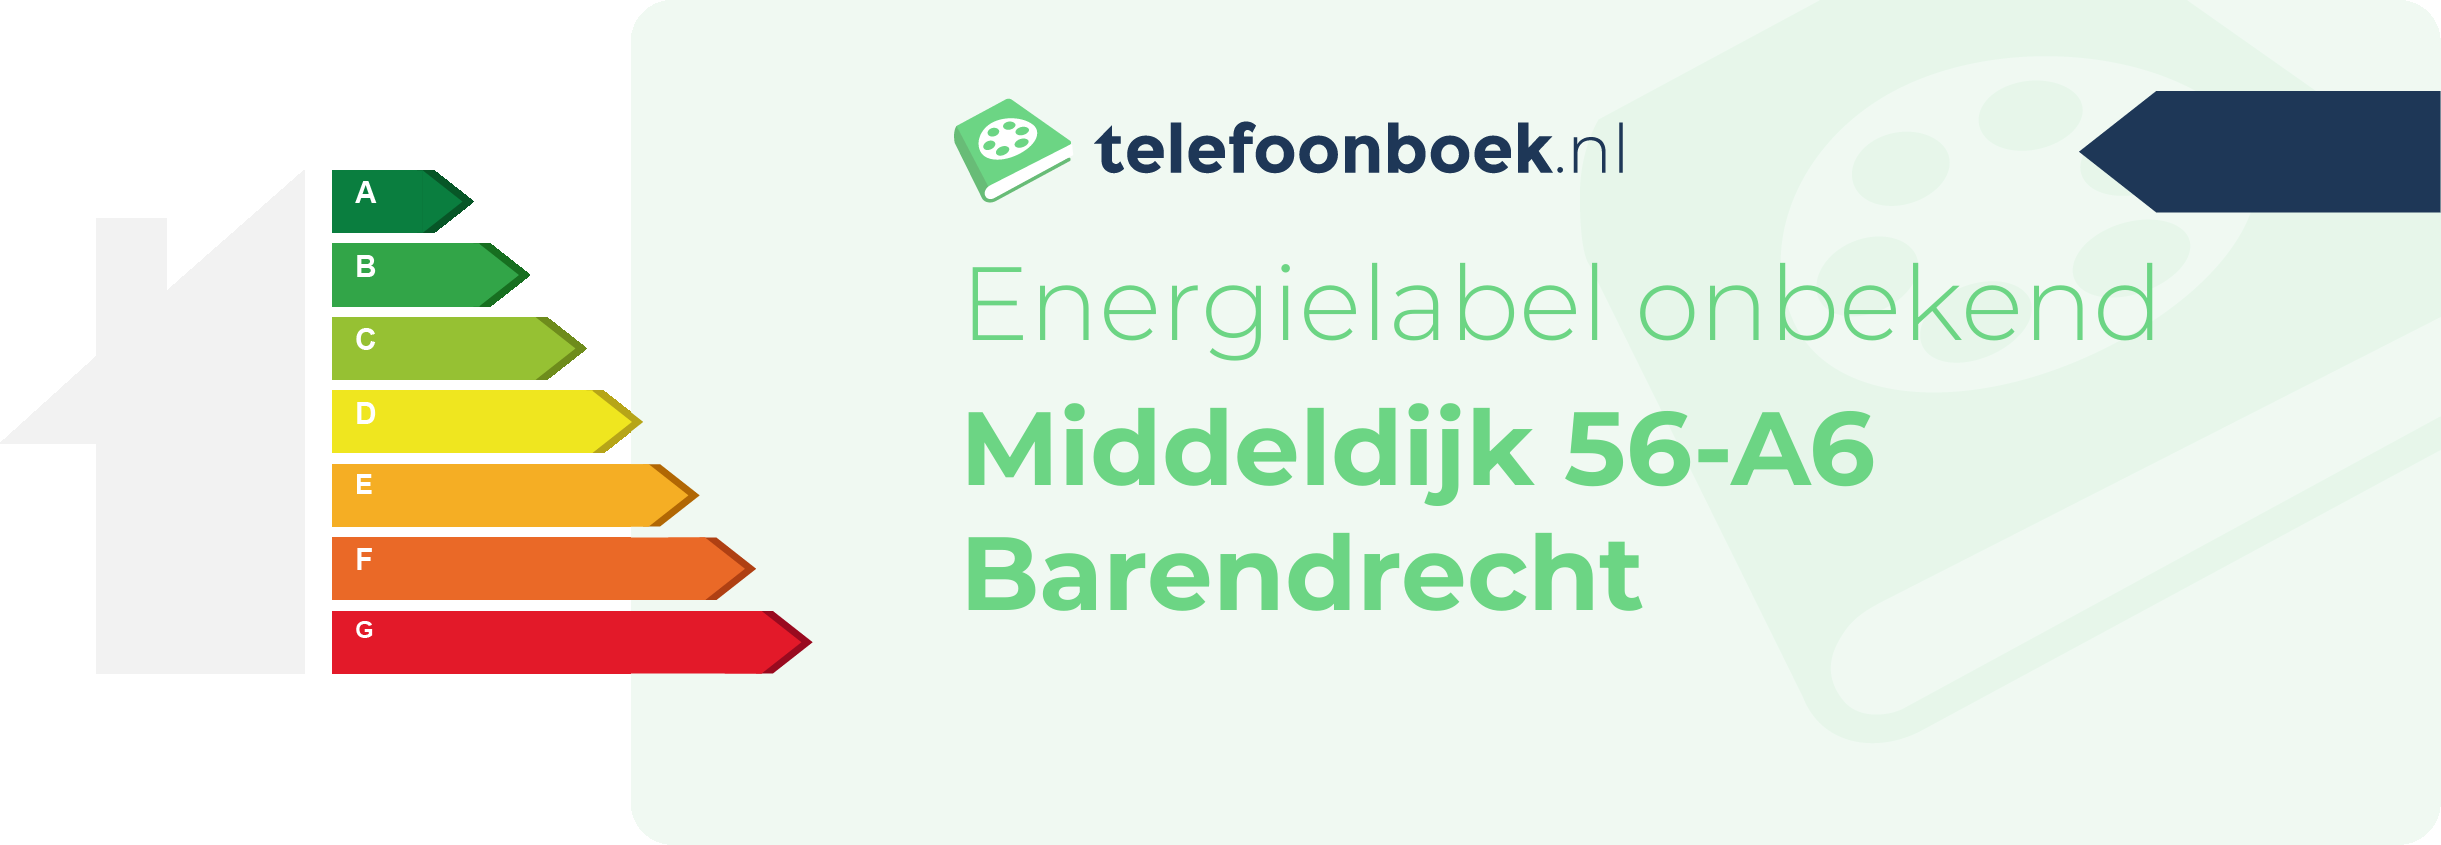 Energielabel Middeldijk 56-A6 Barendrecht